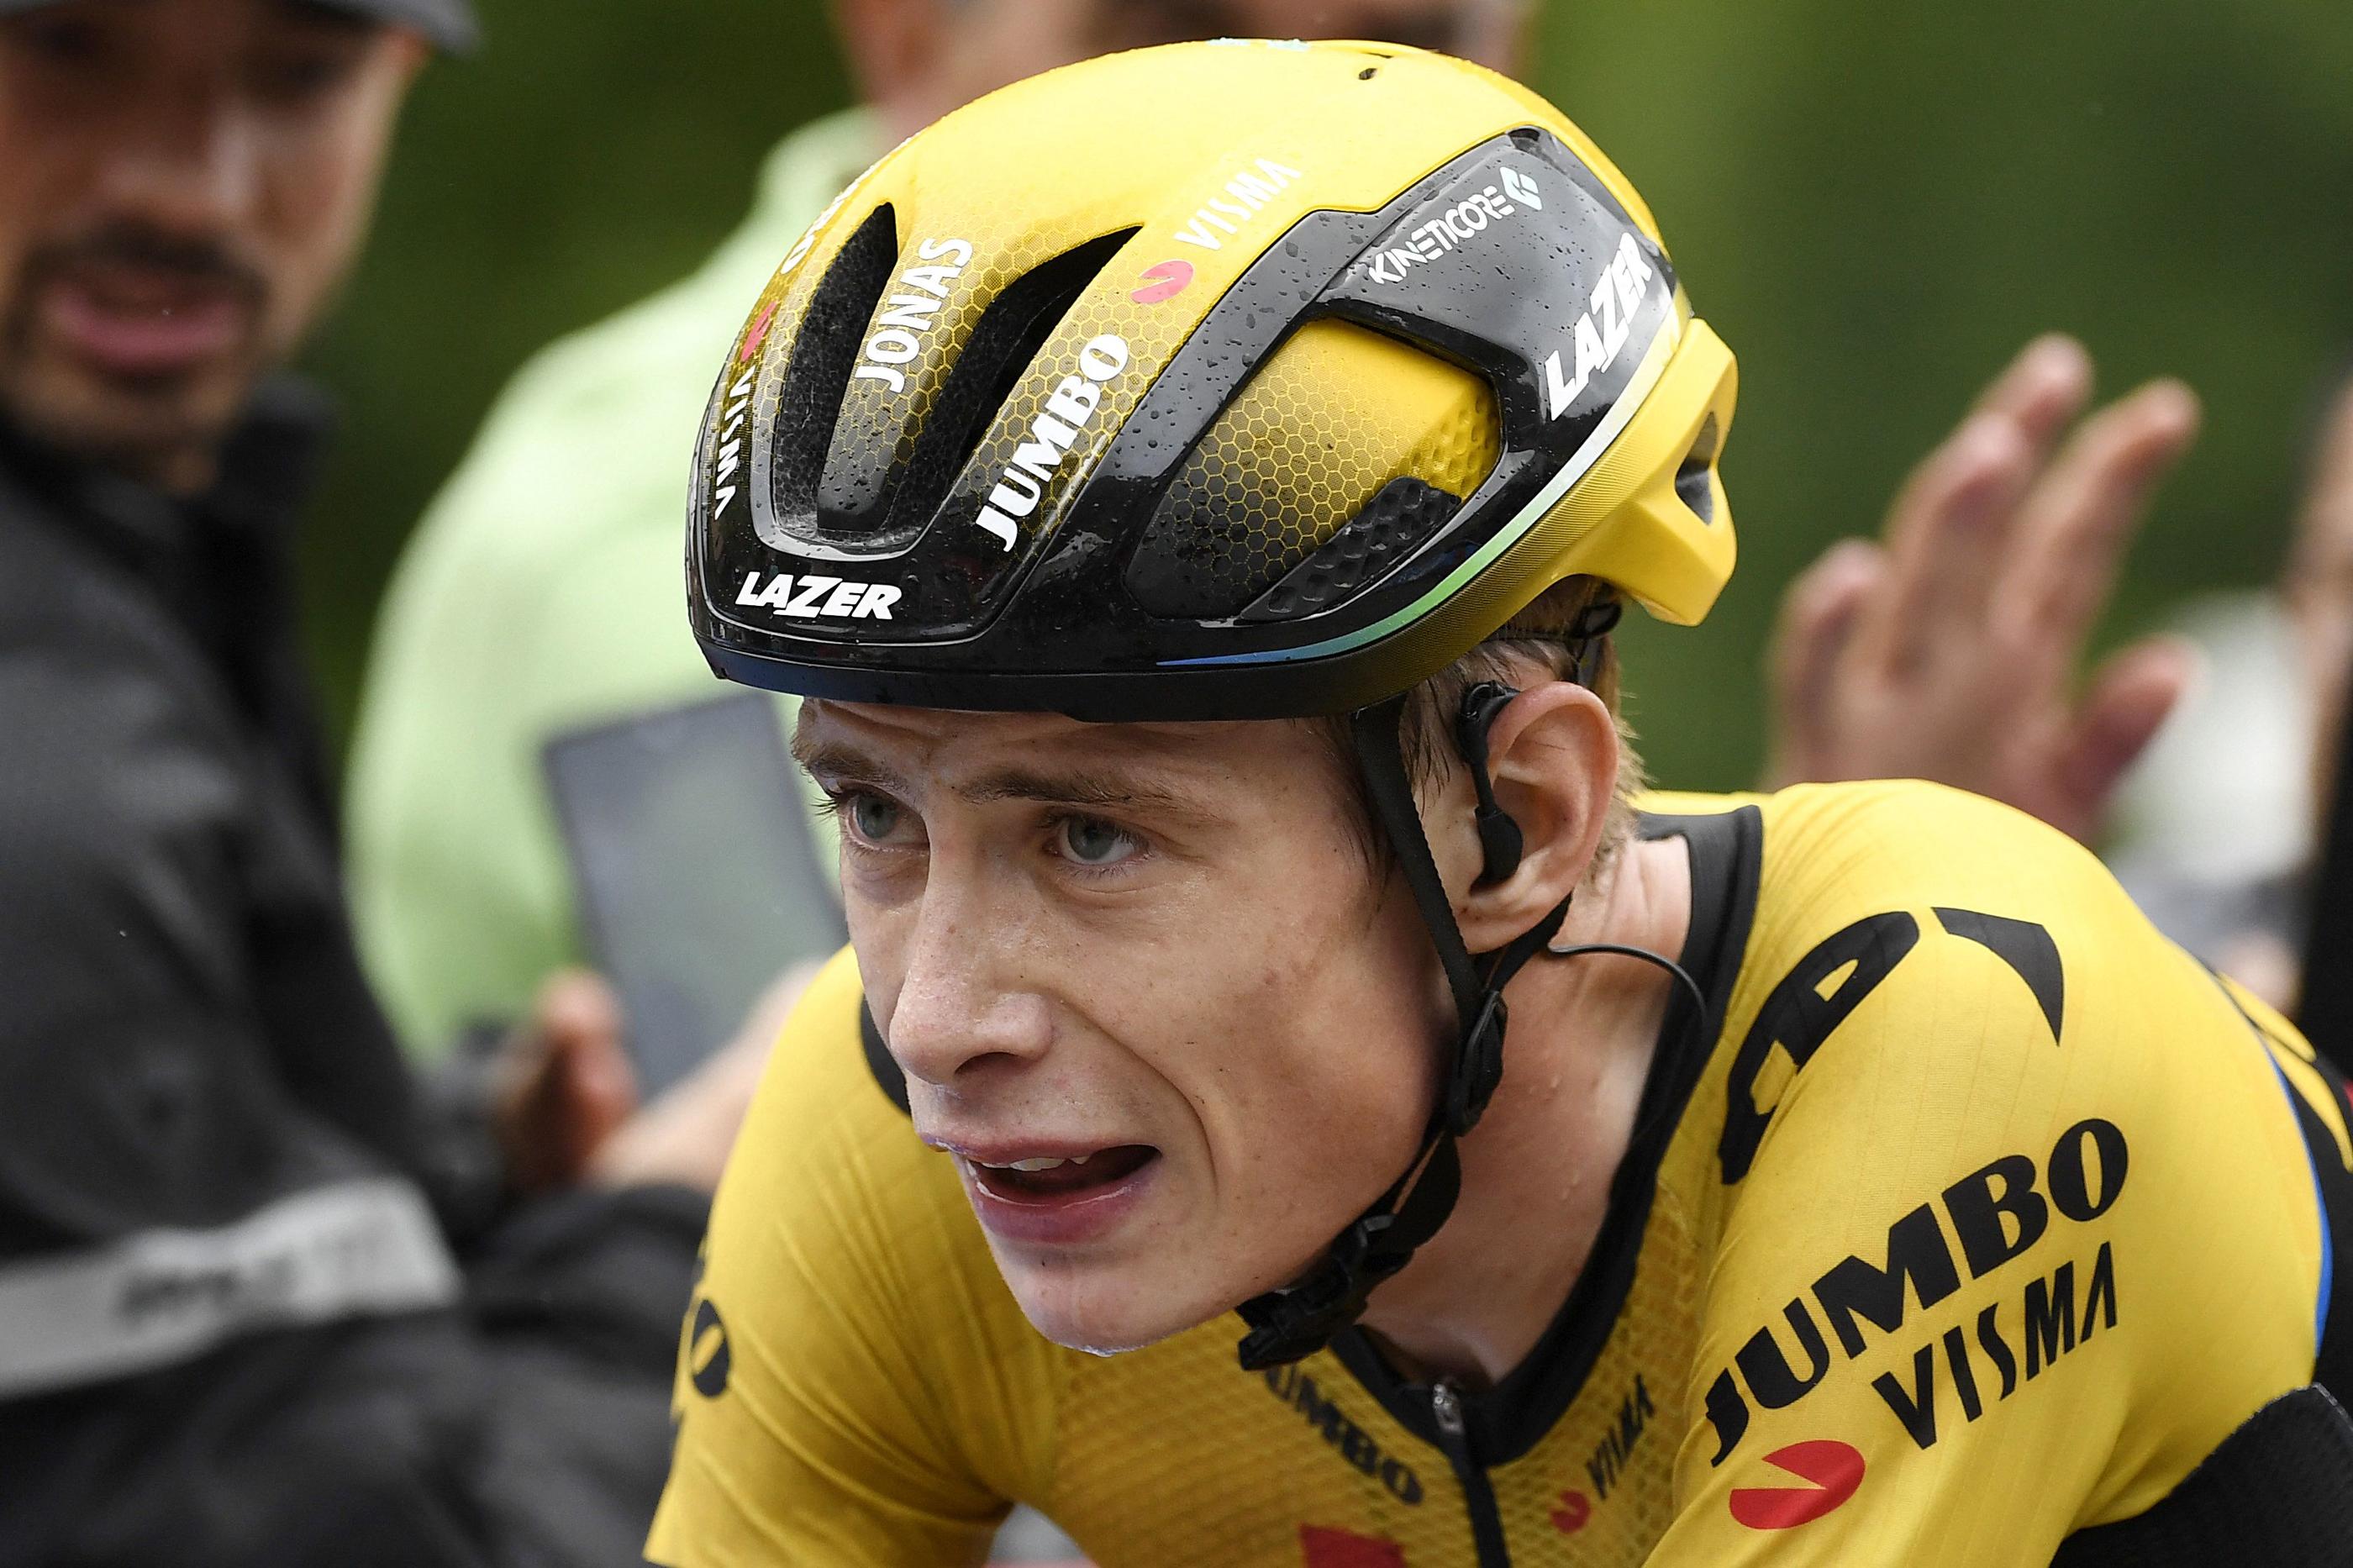 Le champion danois risque de manquer le Tour de France après sa chute sur le Tour du Pays basque. AFP/Miguel Riopa